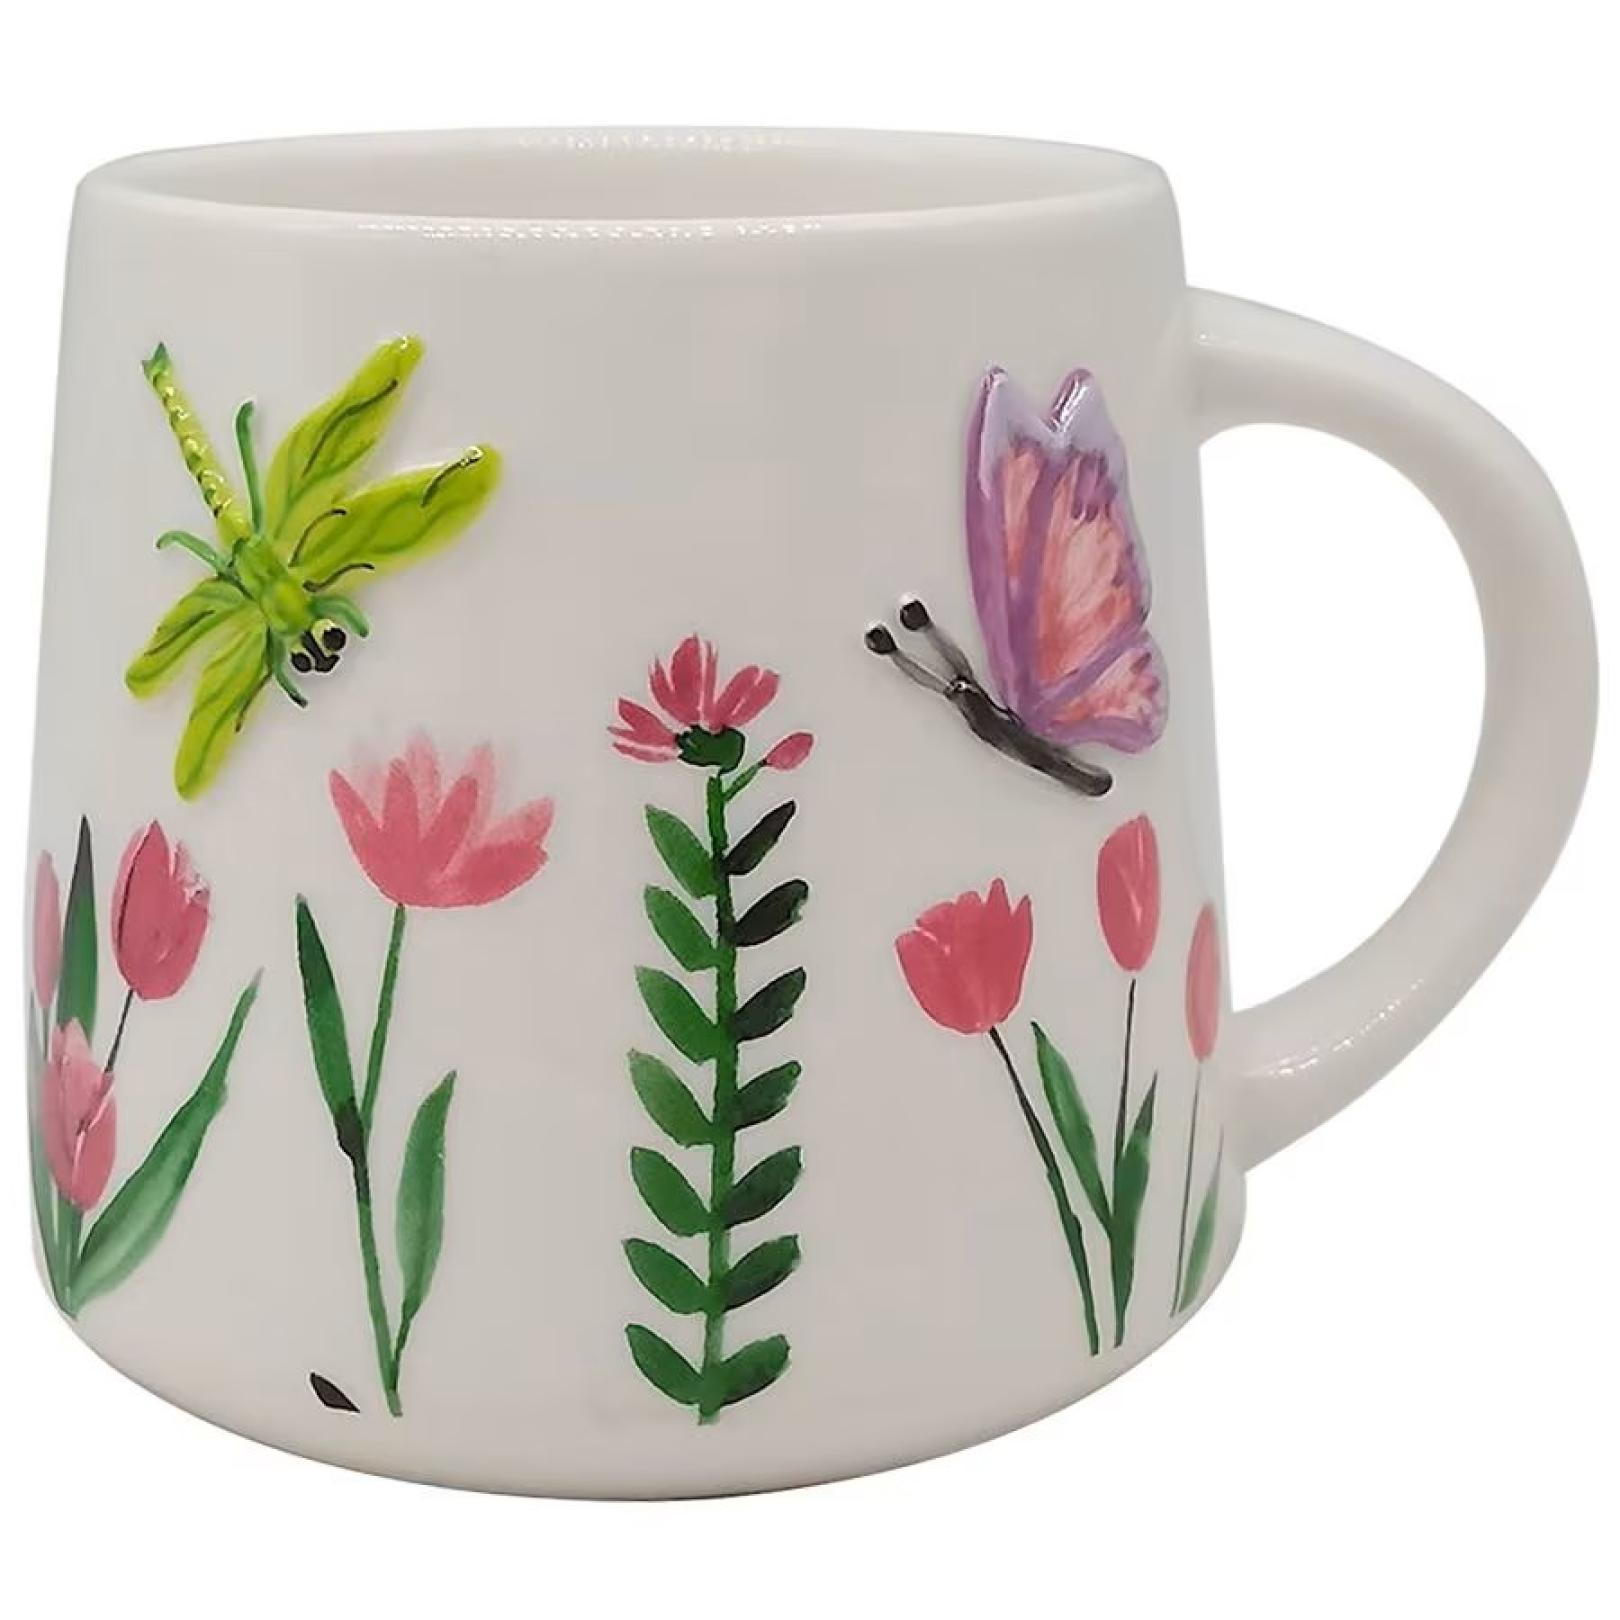 Easter spring beverage mug